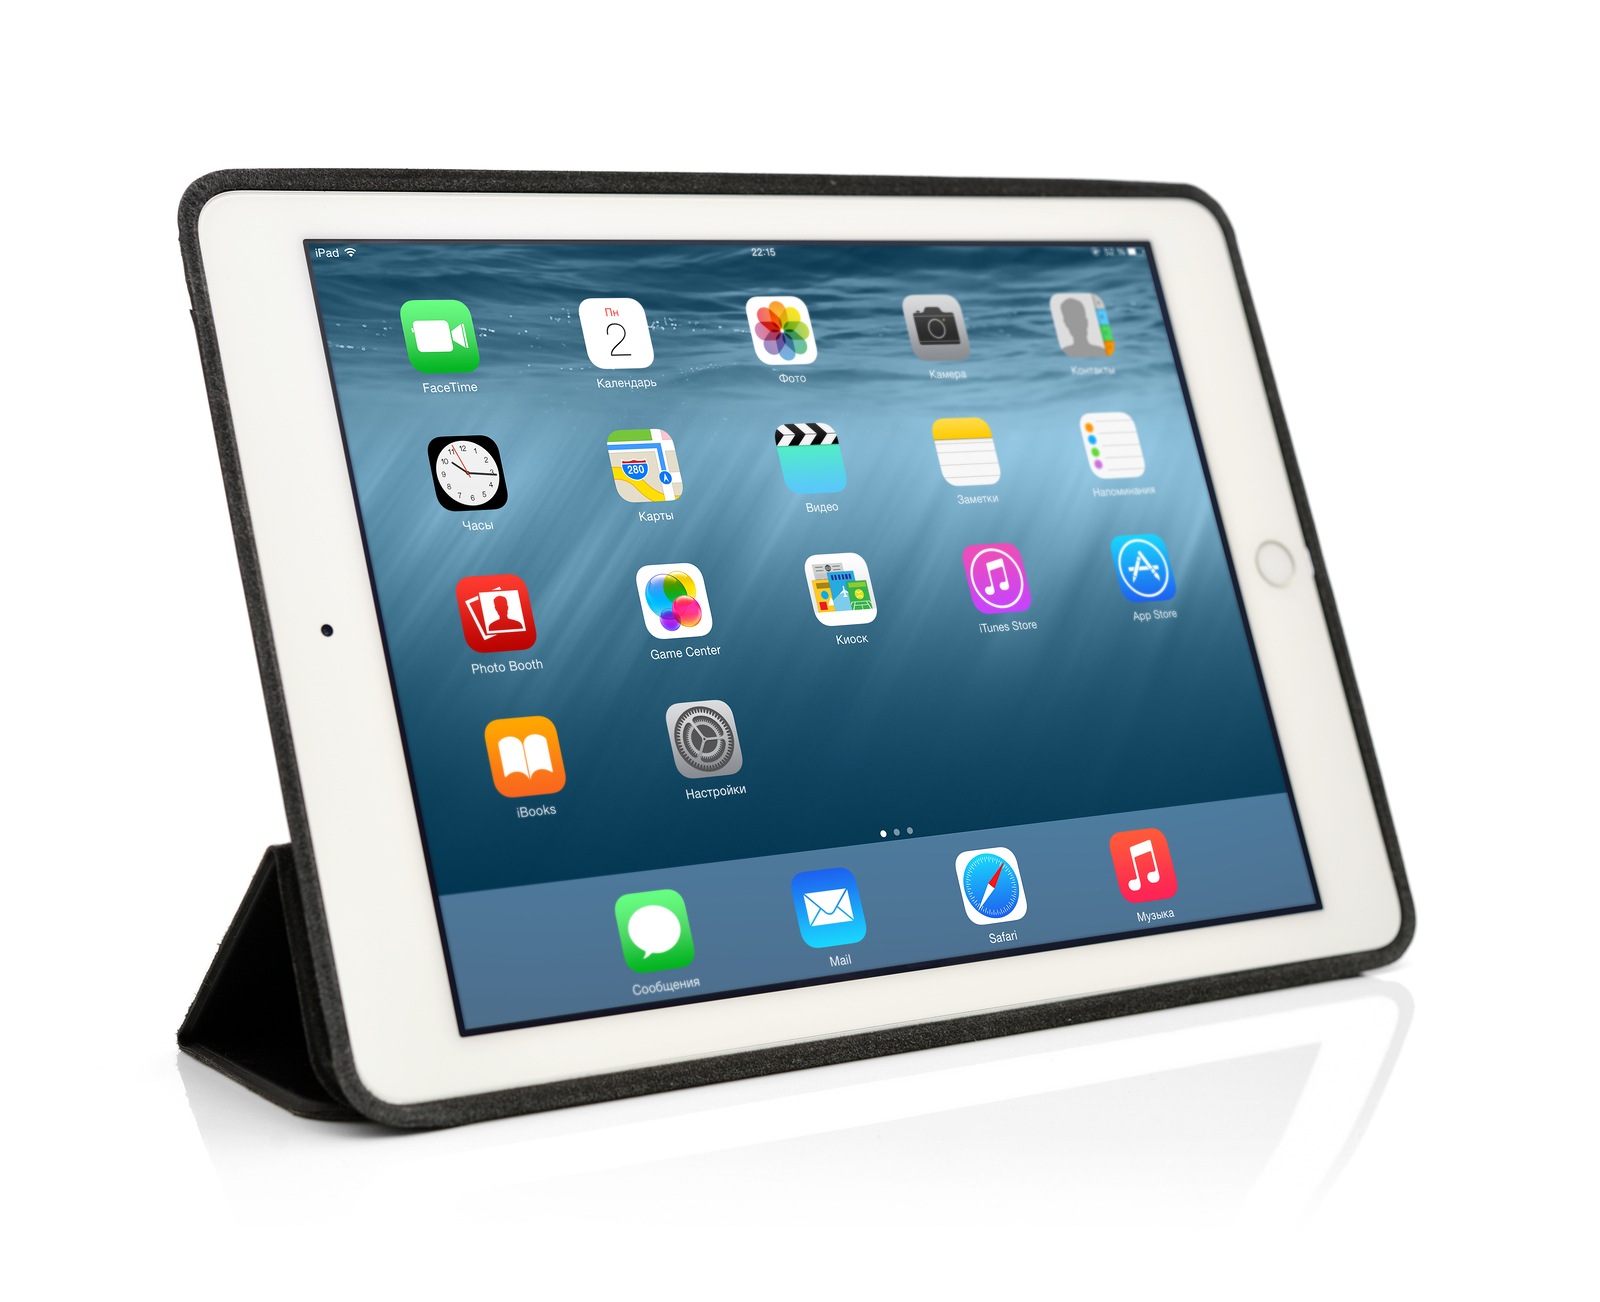 Erscheint das neue iPad Air mit USB-C? - Apfelpatient